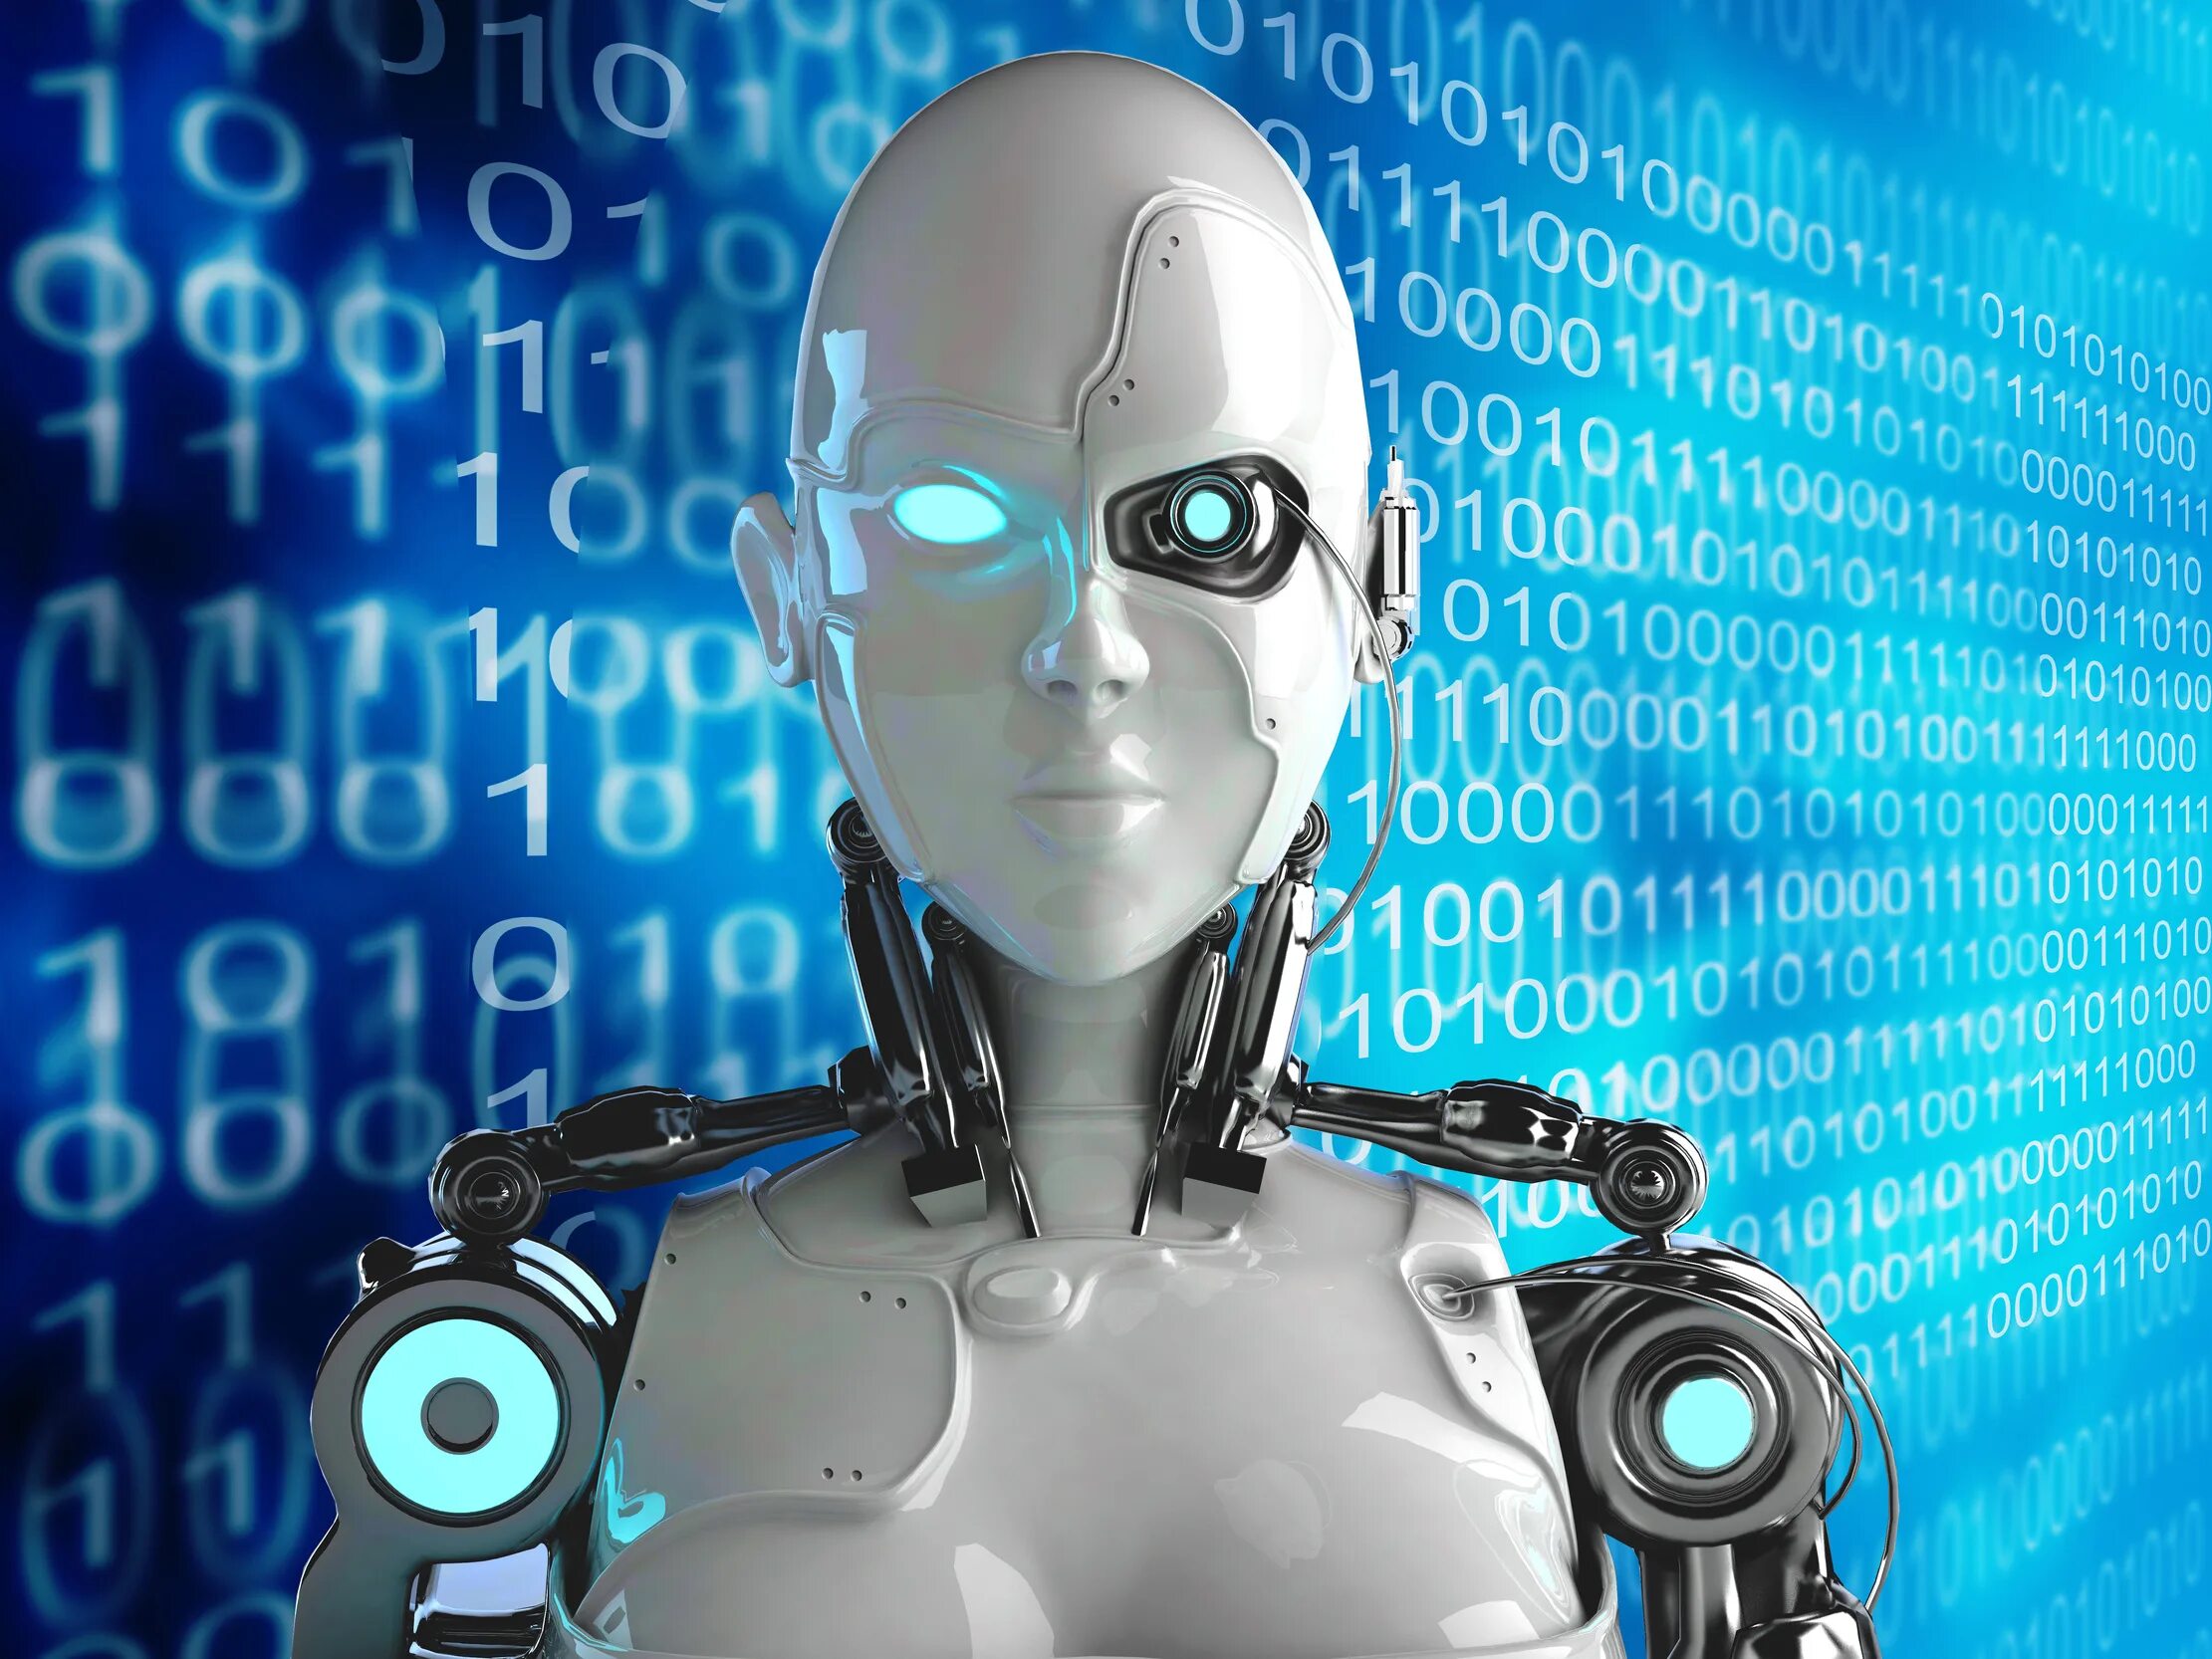 Описание робота человека. Робот человек. Робот с искусственным интеллектом. Компьютеры и роботы. Искусственный интеллект и человек.